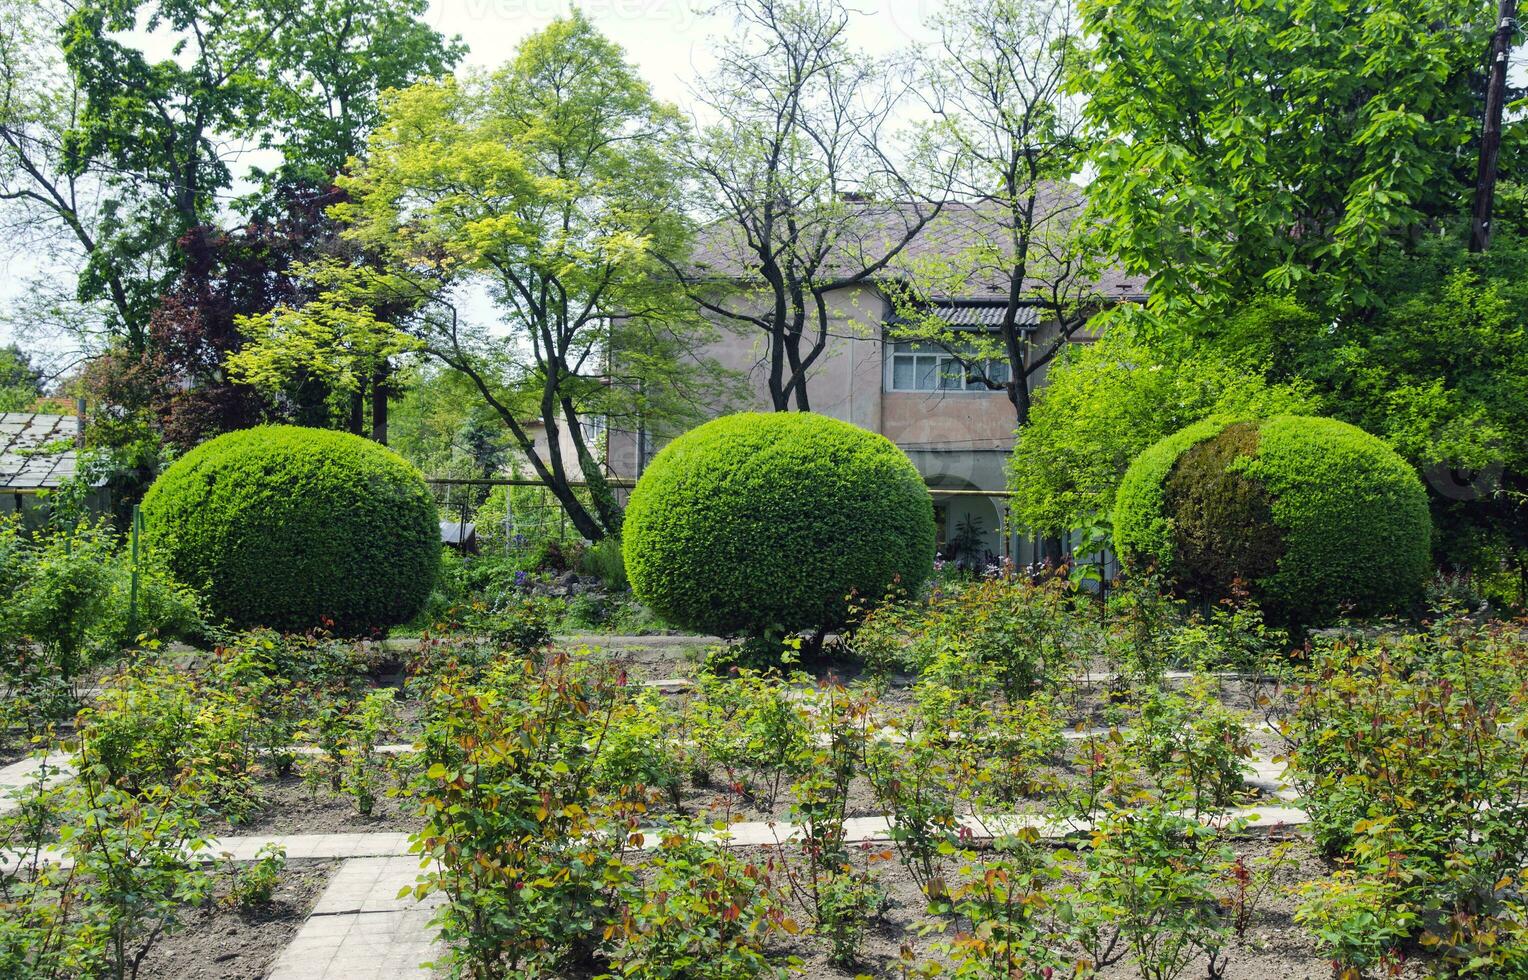 Three round green bushes photo